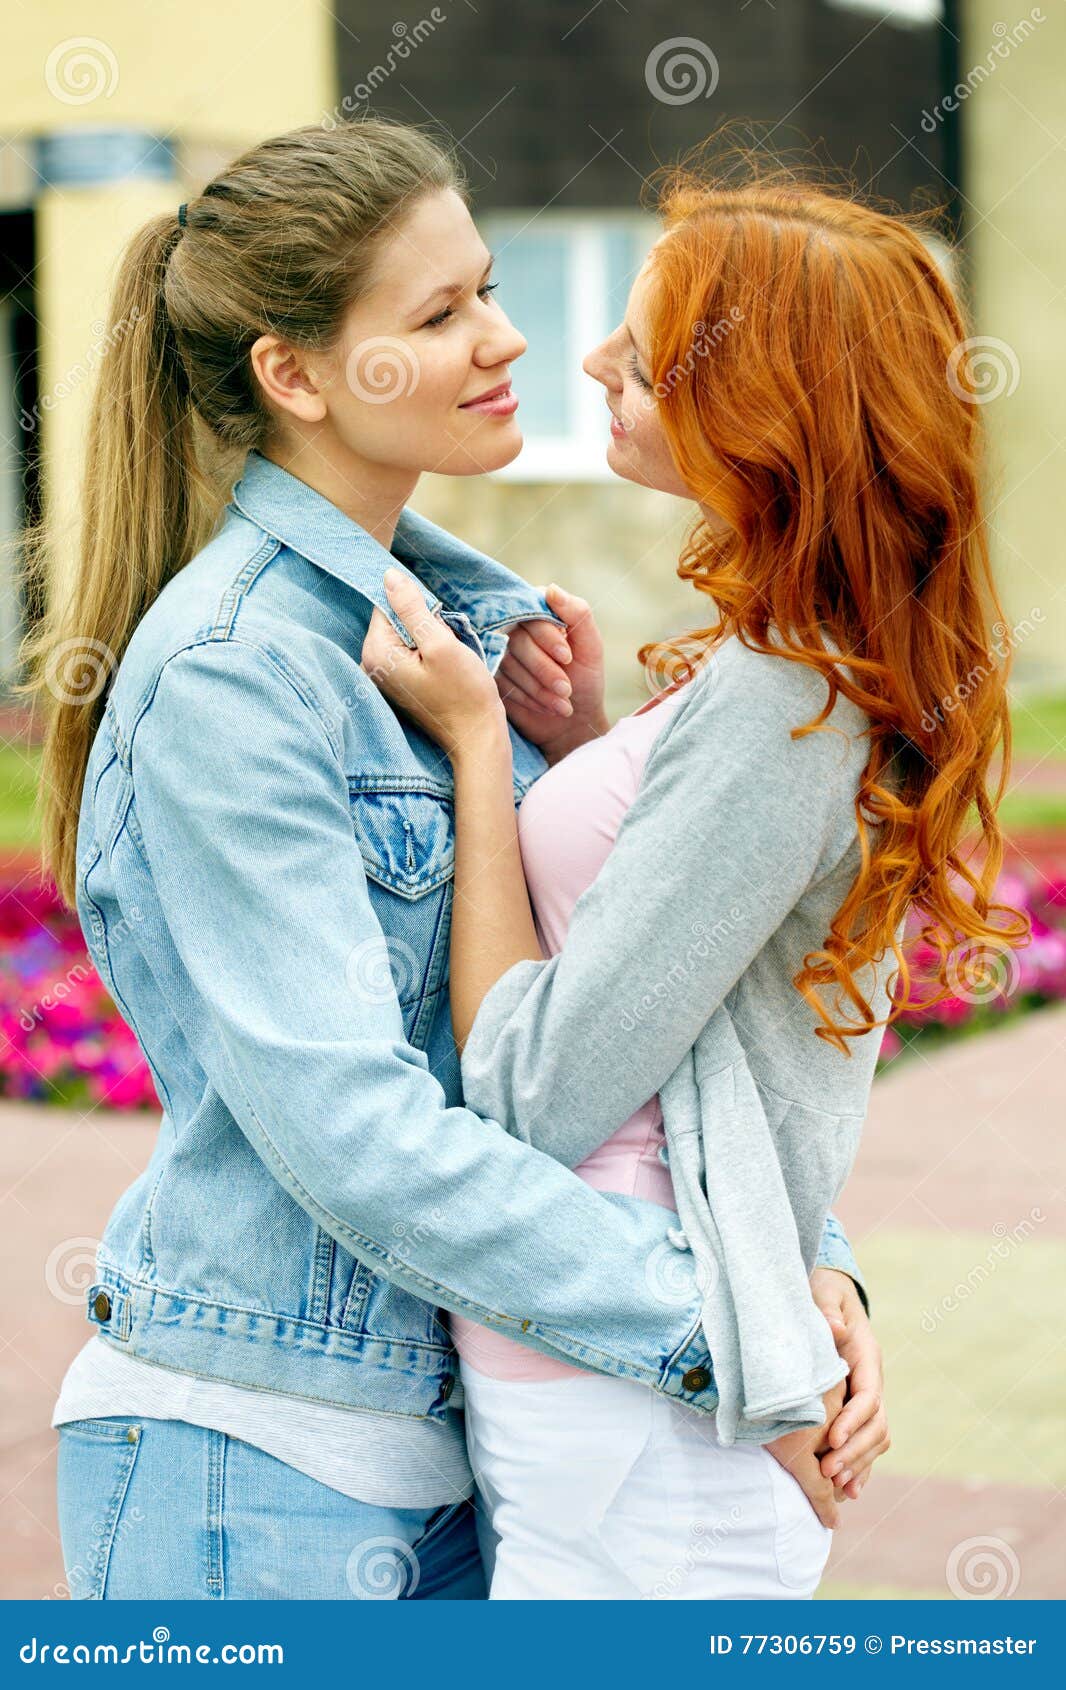 两个年轻可爱的女同性恋者拥抱 库存图片. 图片 包括有 日期, 愉快, 女孩, 白种人, 夫妇, 亲吻, 同性恋 - 38091277